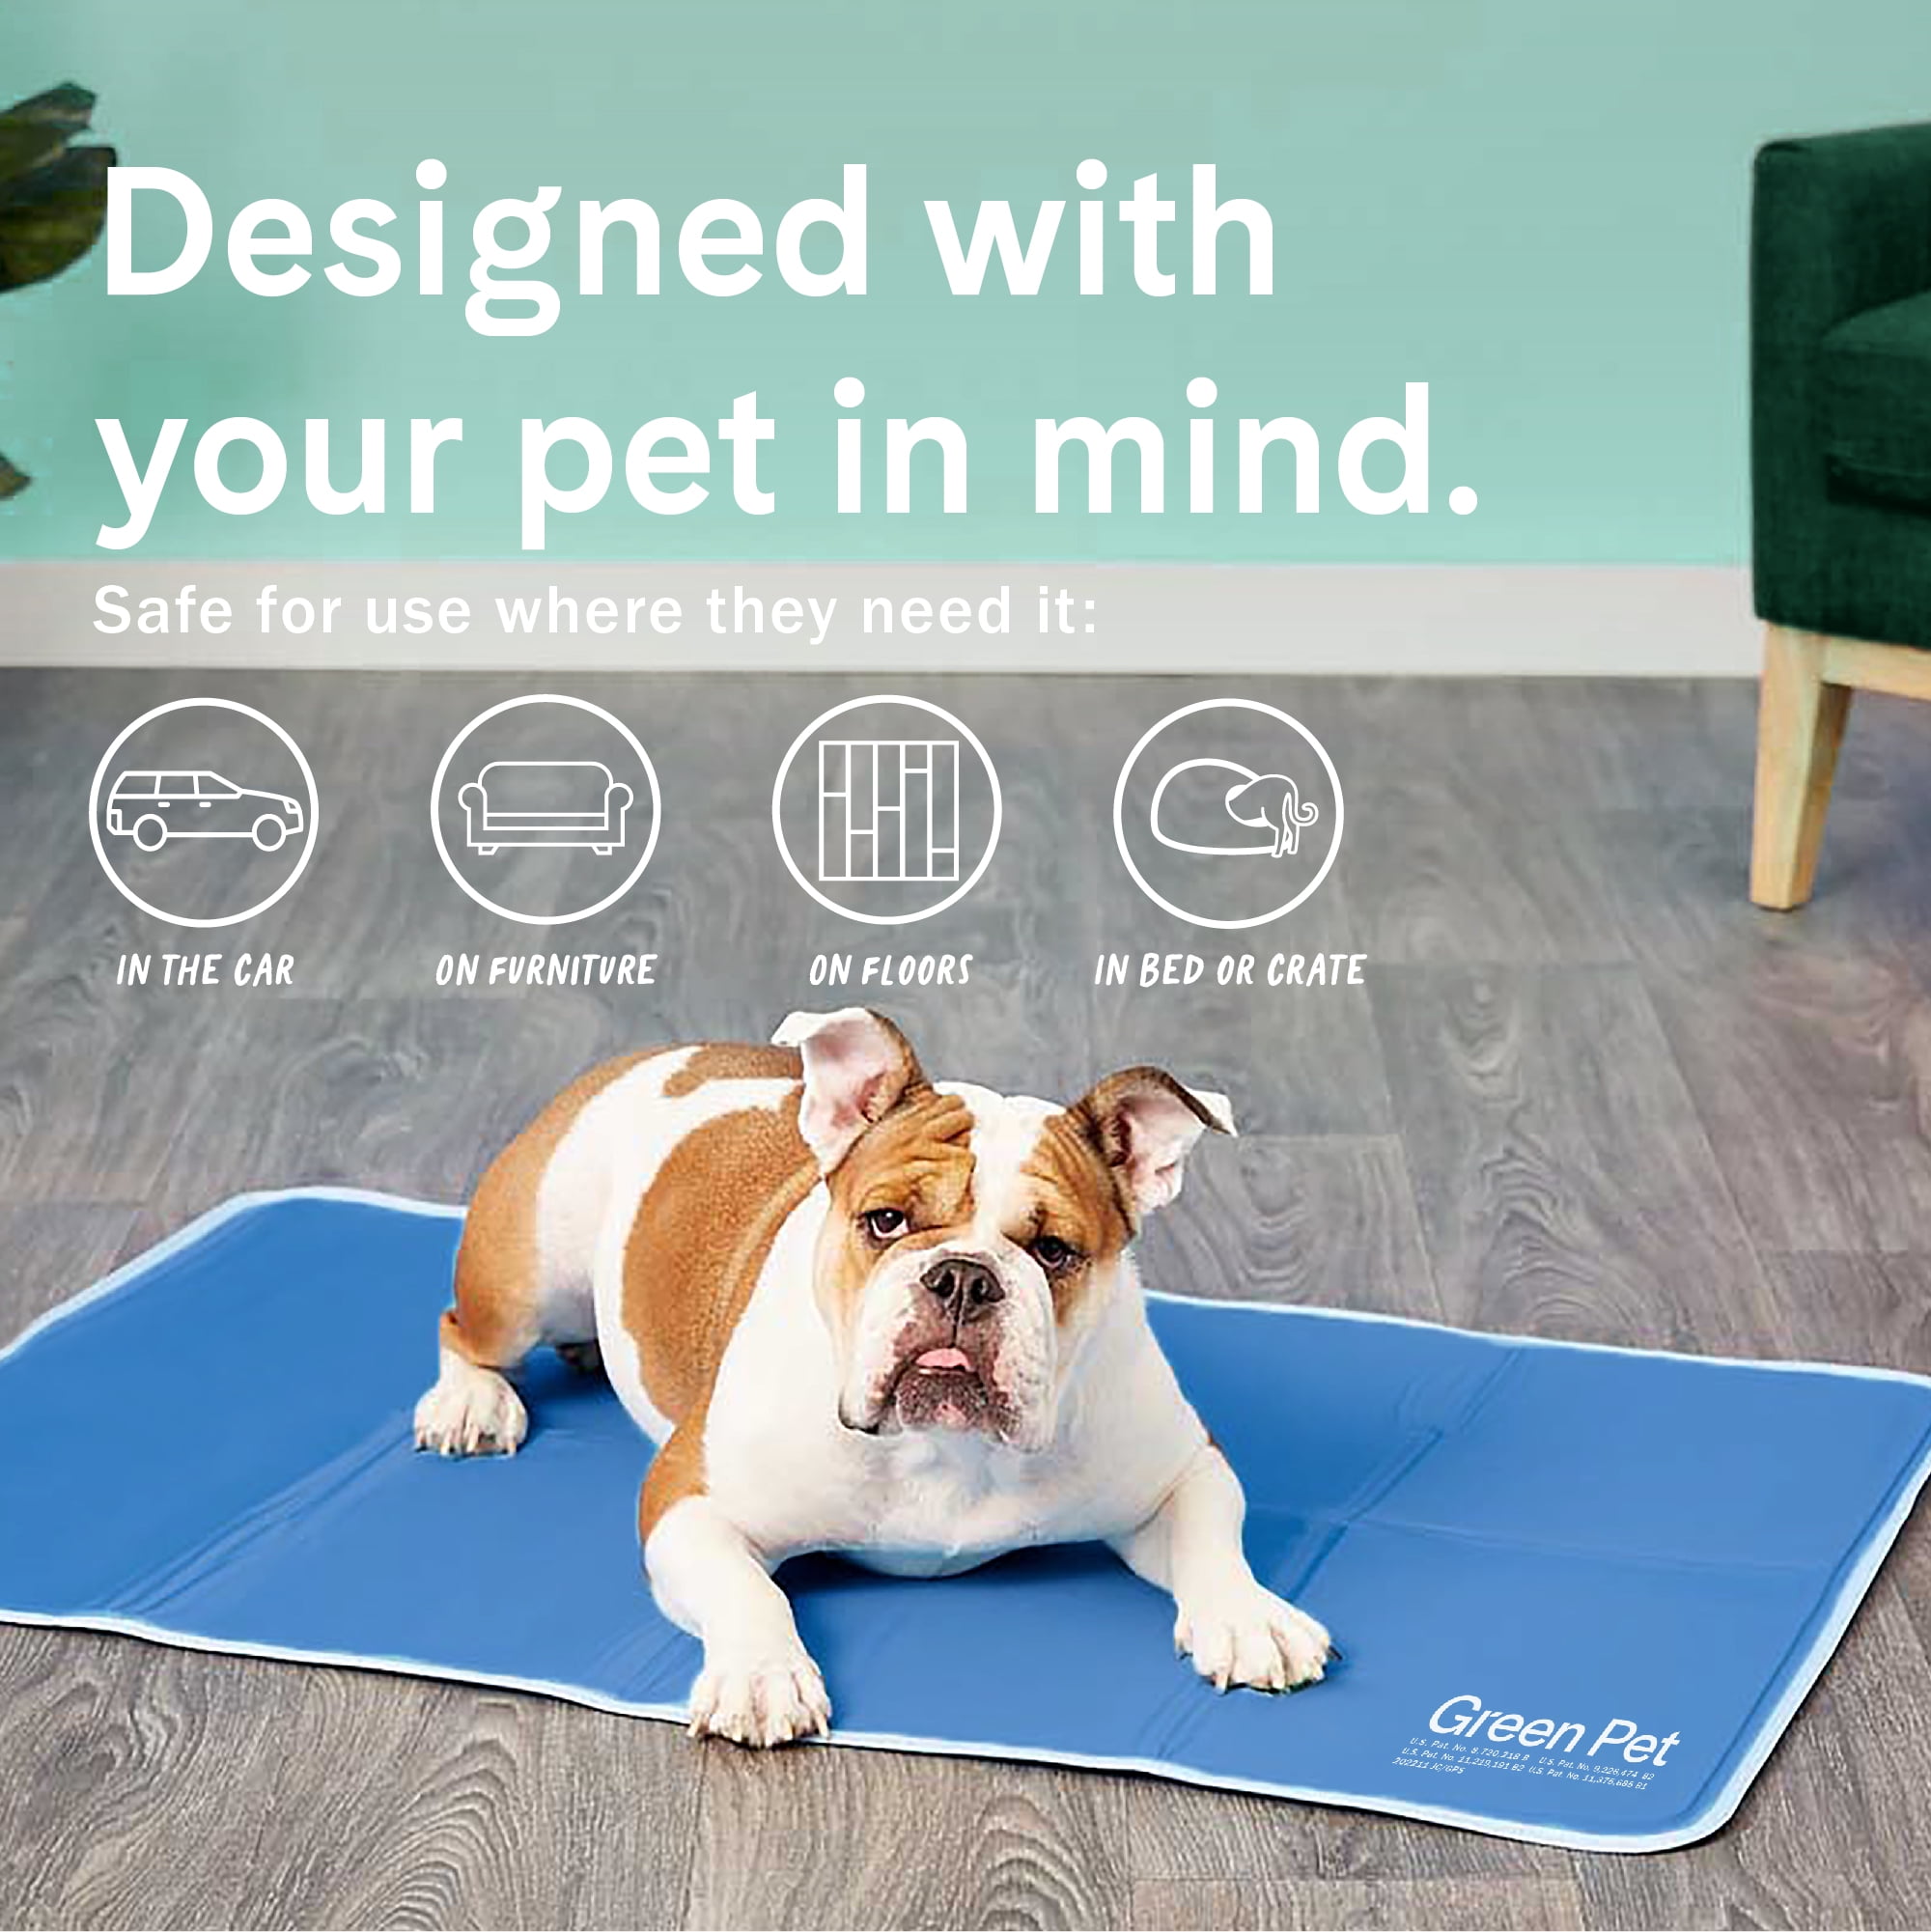 Rectangle Pet Cooling Mat – Pet Tone Official